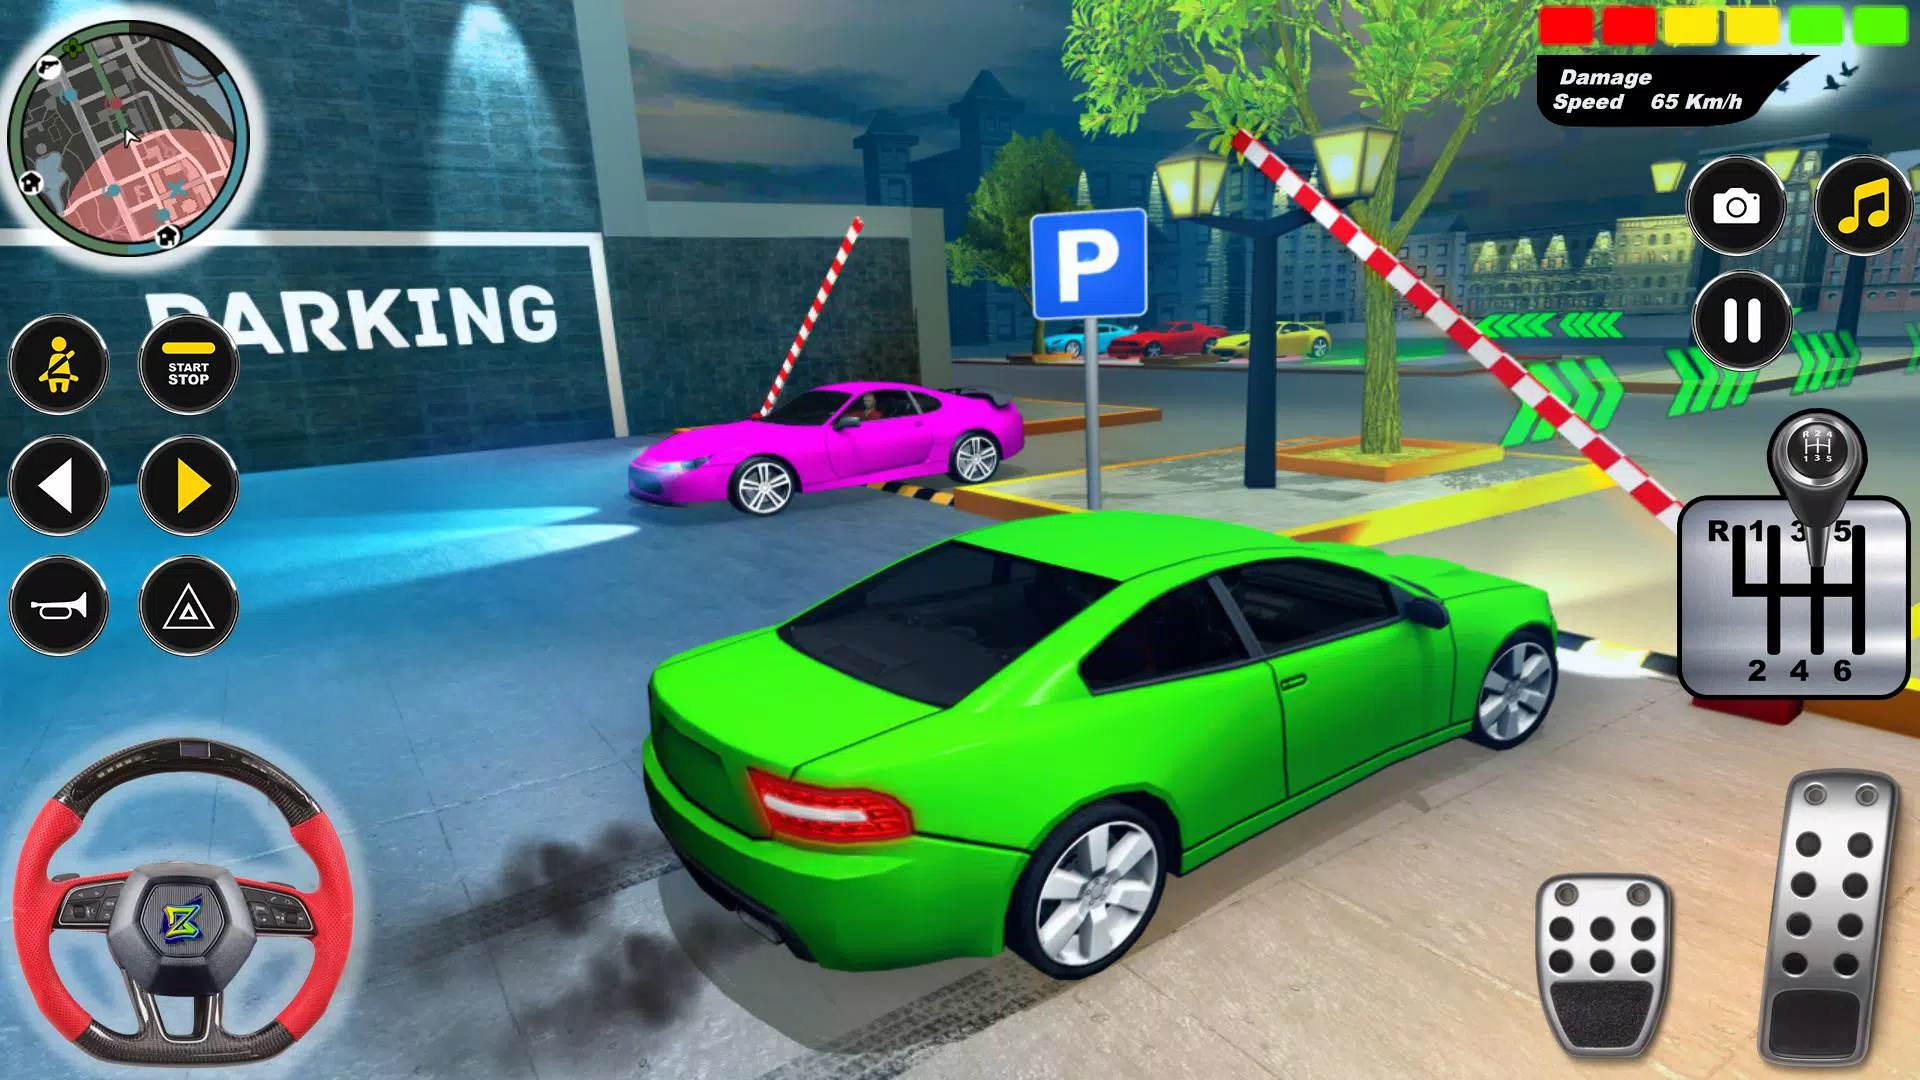 Download do APK de estacionamento carro jogos 3d para Android